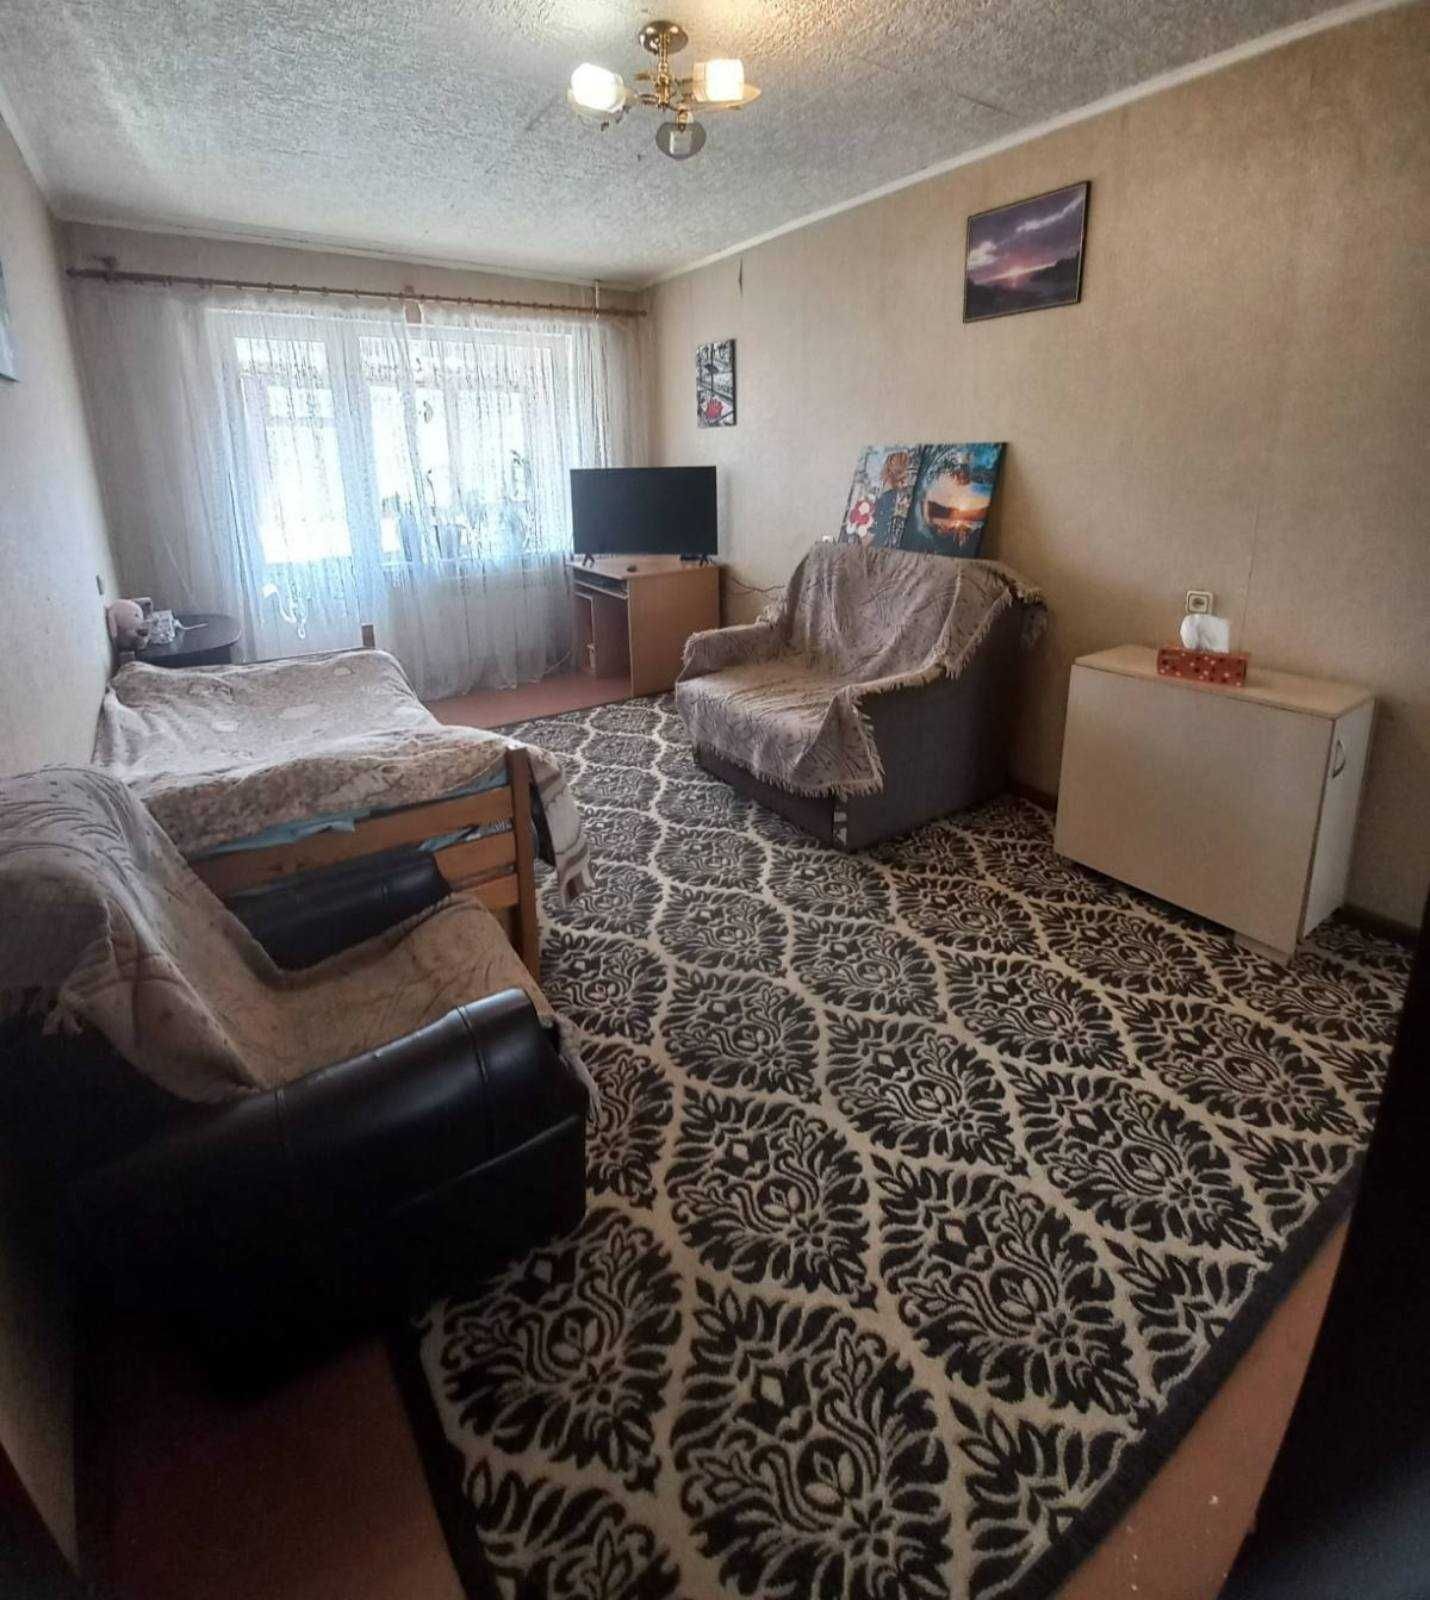 Продається 2-кімнатна квартира на селищі Котовського